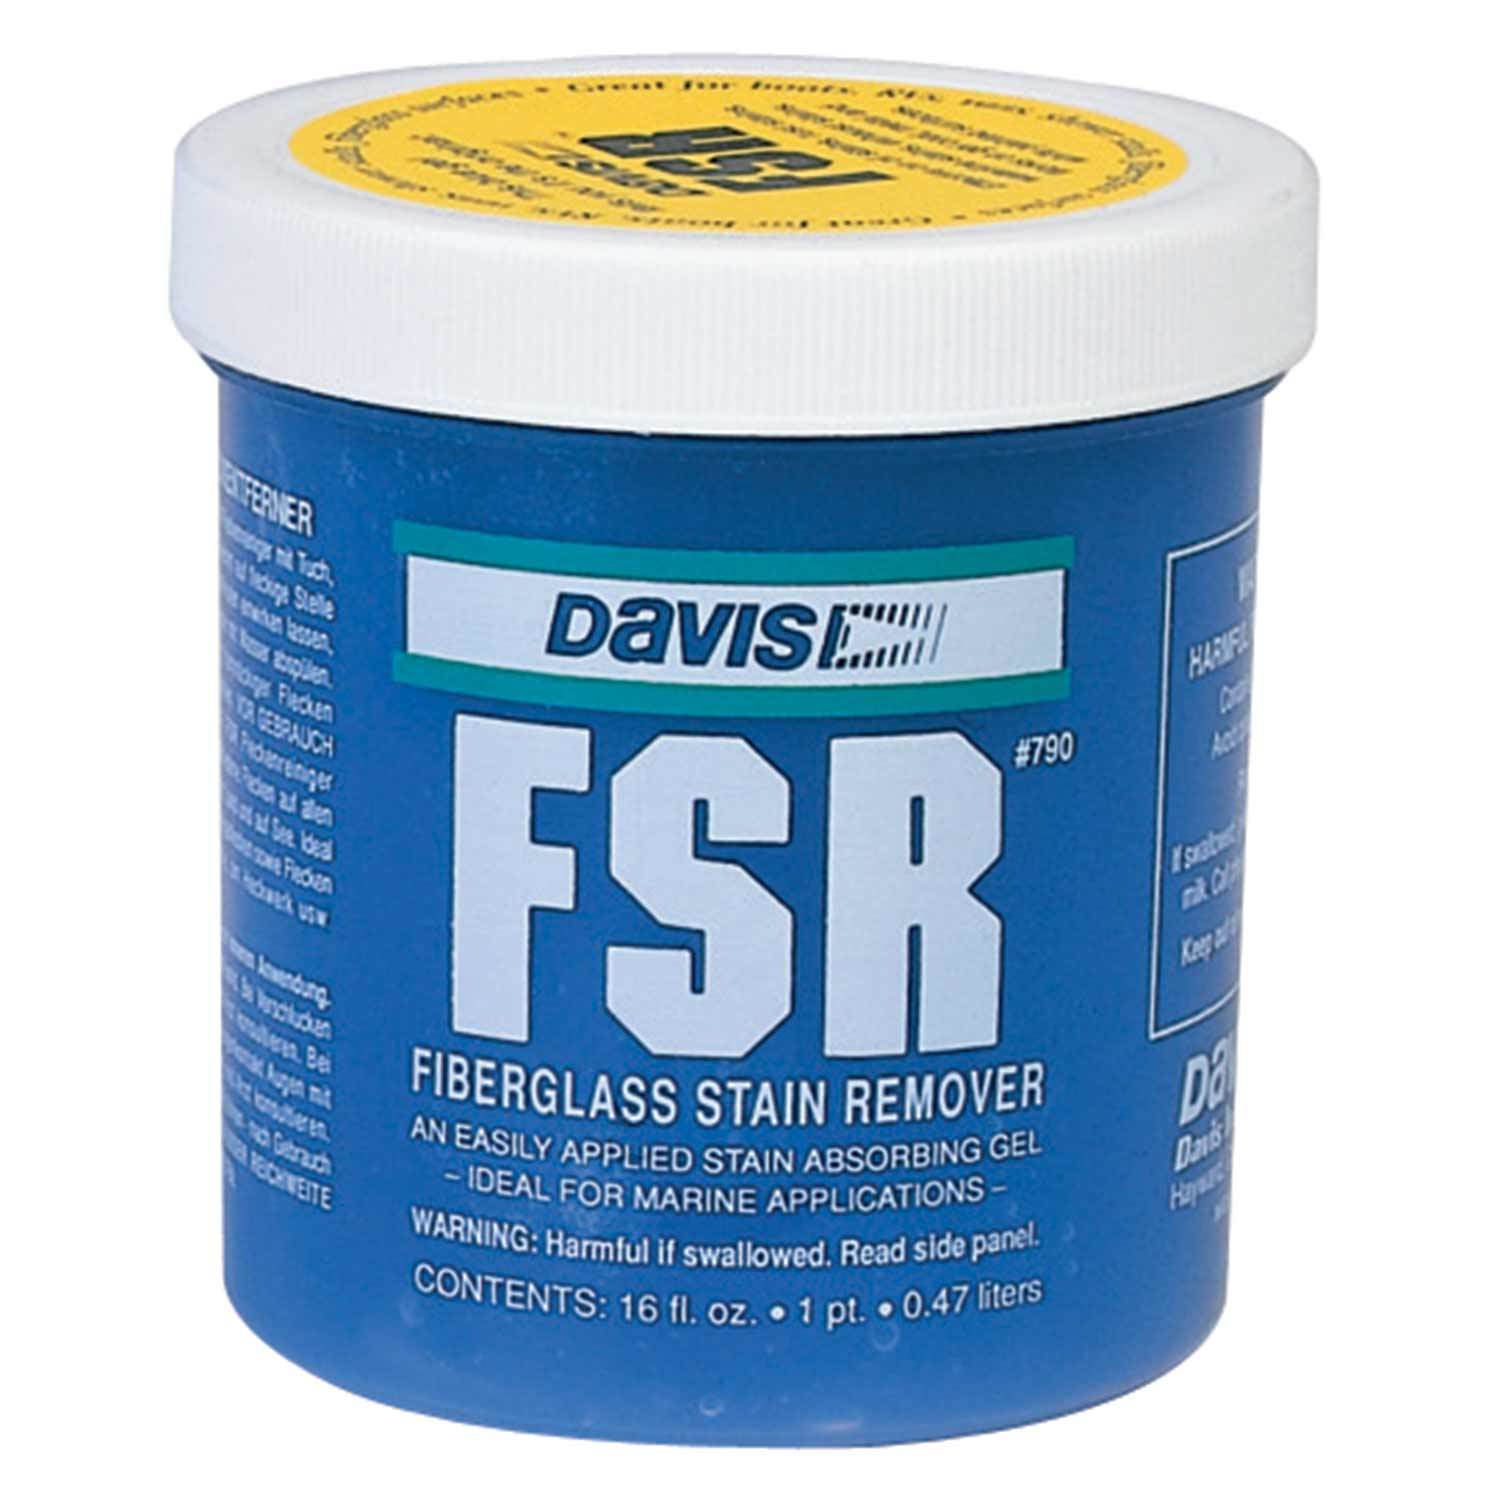 FSR Fiberglass Stain Remover, 16 oz. | West Marine - tẩy vết bẩn (stain remover): Bạn đã có thử tẩy vết bẩn trên sợi thủy tinh? Hãy thử FSR Fiberglass Stain Remover - một sản phẩm tẩy vết bẩn hiệu quả, nhanh chóng và an toàn. Với công thức đặc biệt, sản phẩm này có thể giúp bạn loại bỏ các vết bẩn khó chịu của sợi thủy tinh trong thời gian ngắn nhất.